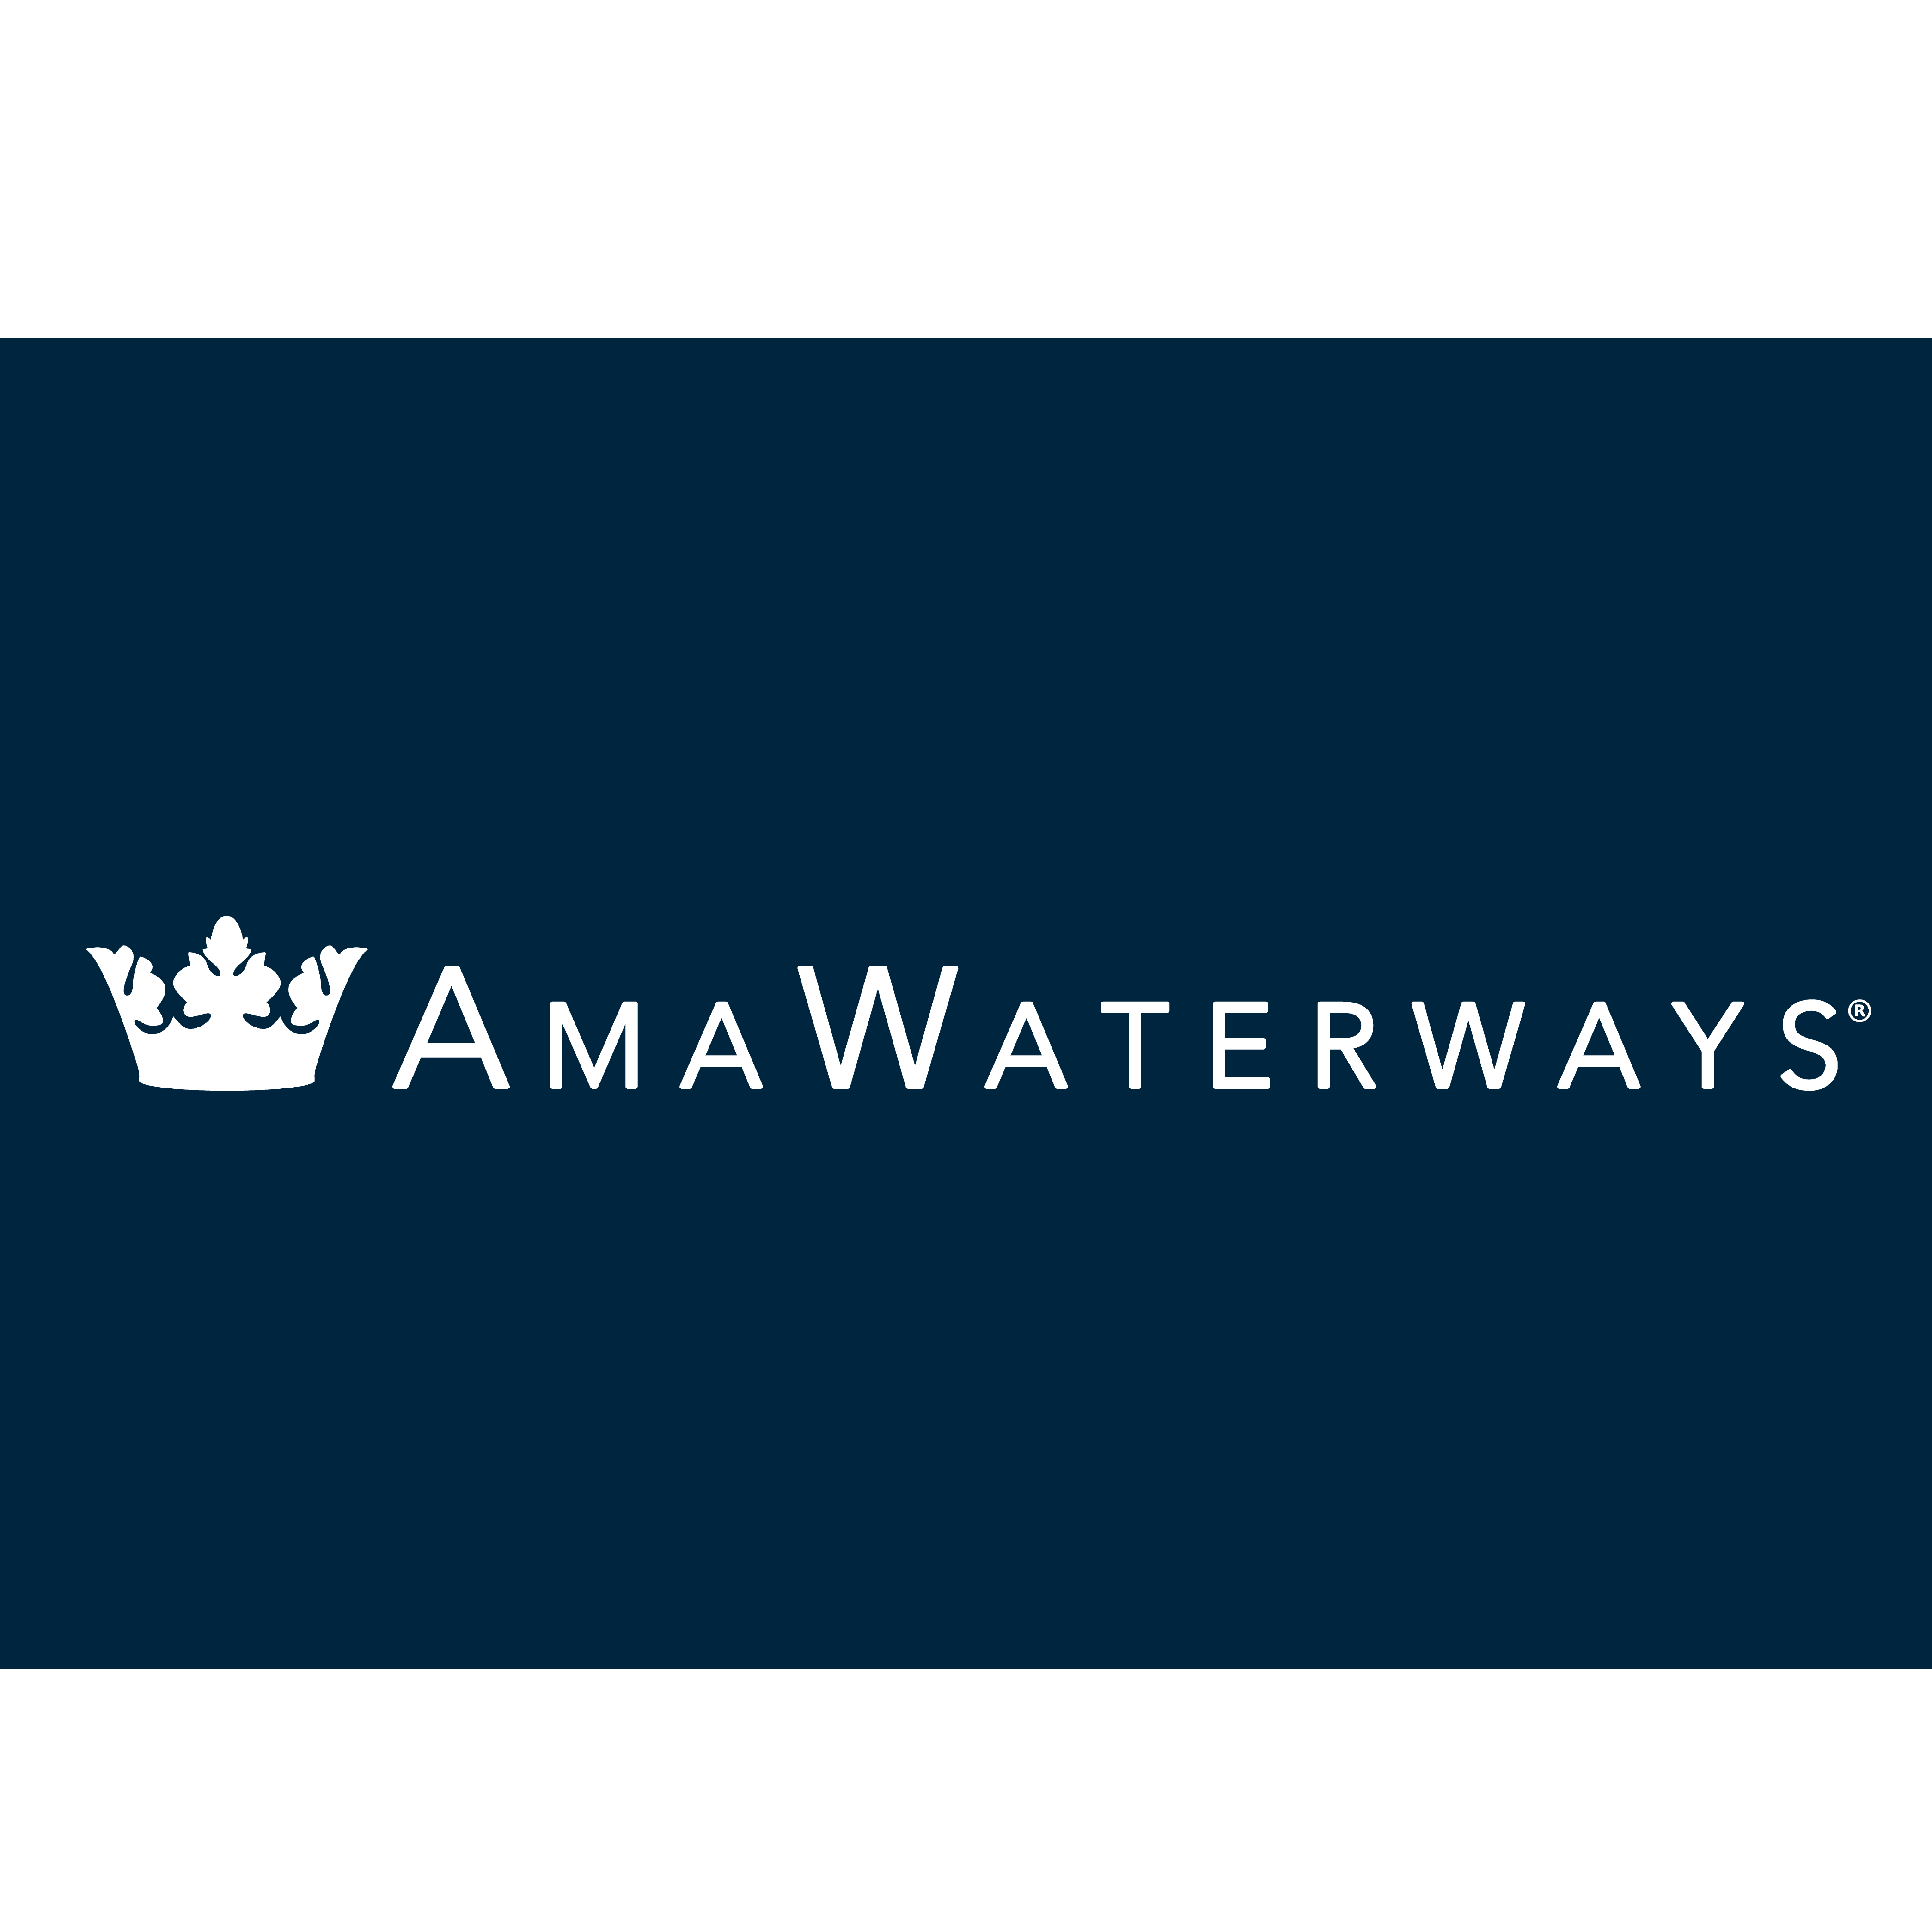 AMA Waterways GmbH